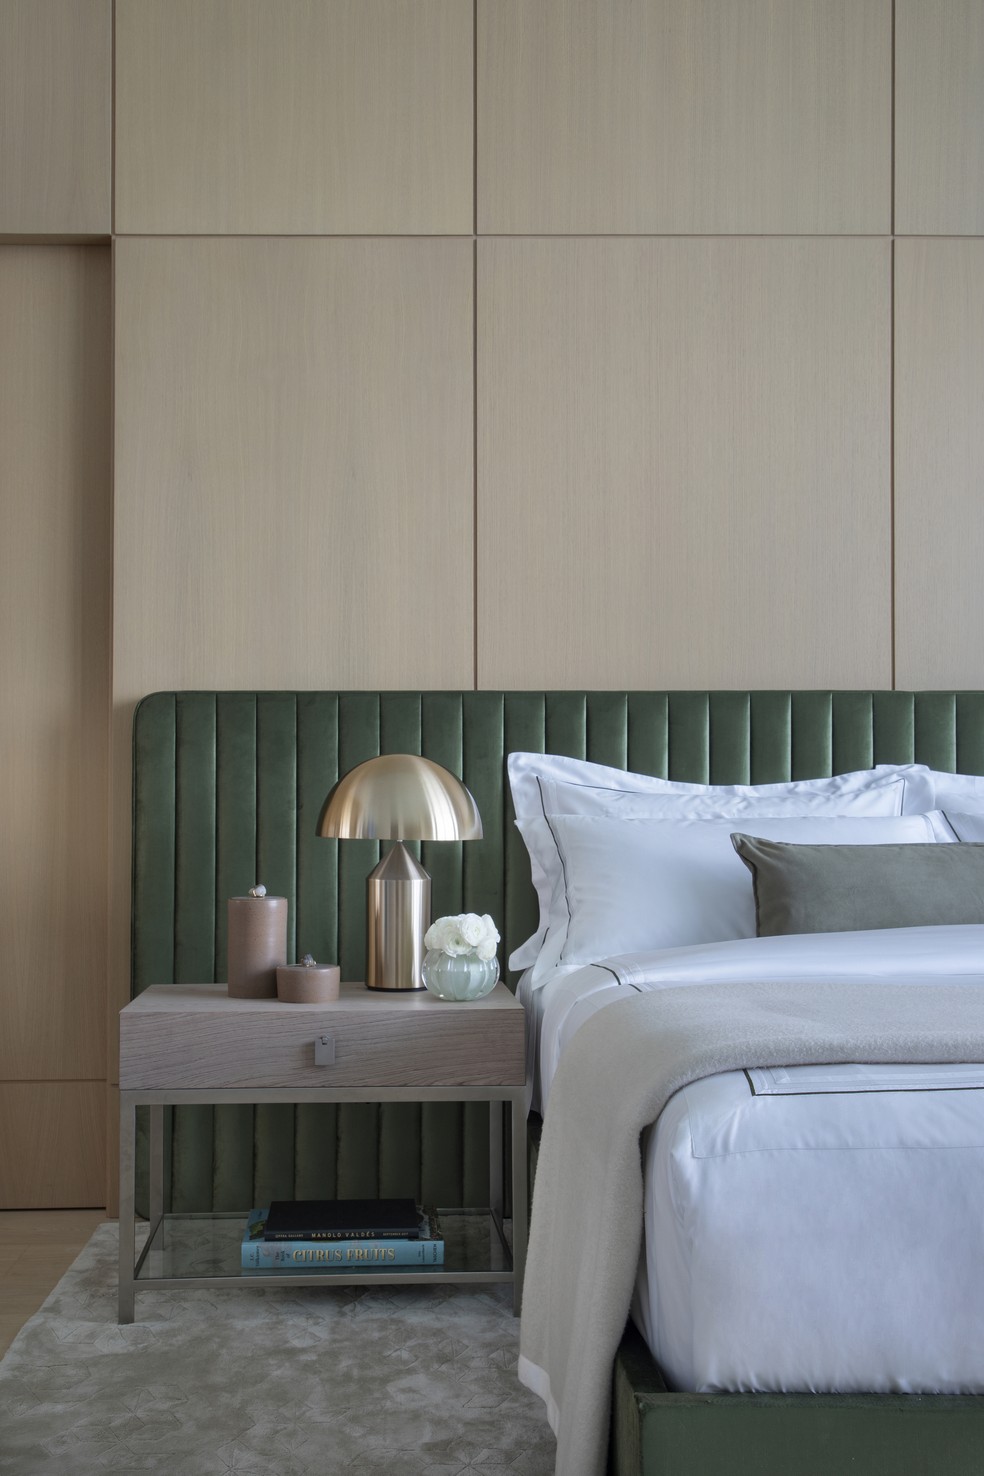 No quarto principal, a cabeceira de veludo verde emoldura a cama de casal — Foto: Denilson Machado/MCA Estúdio